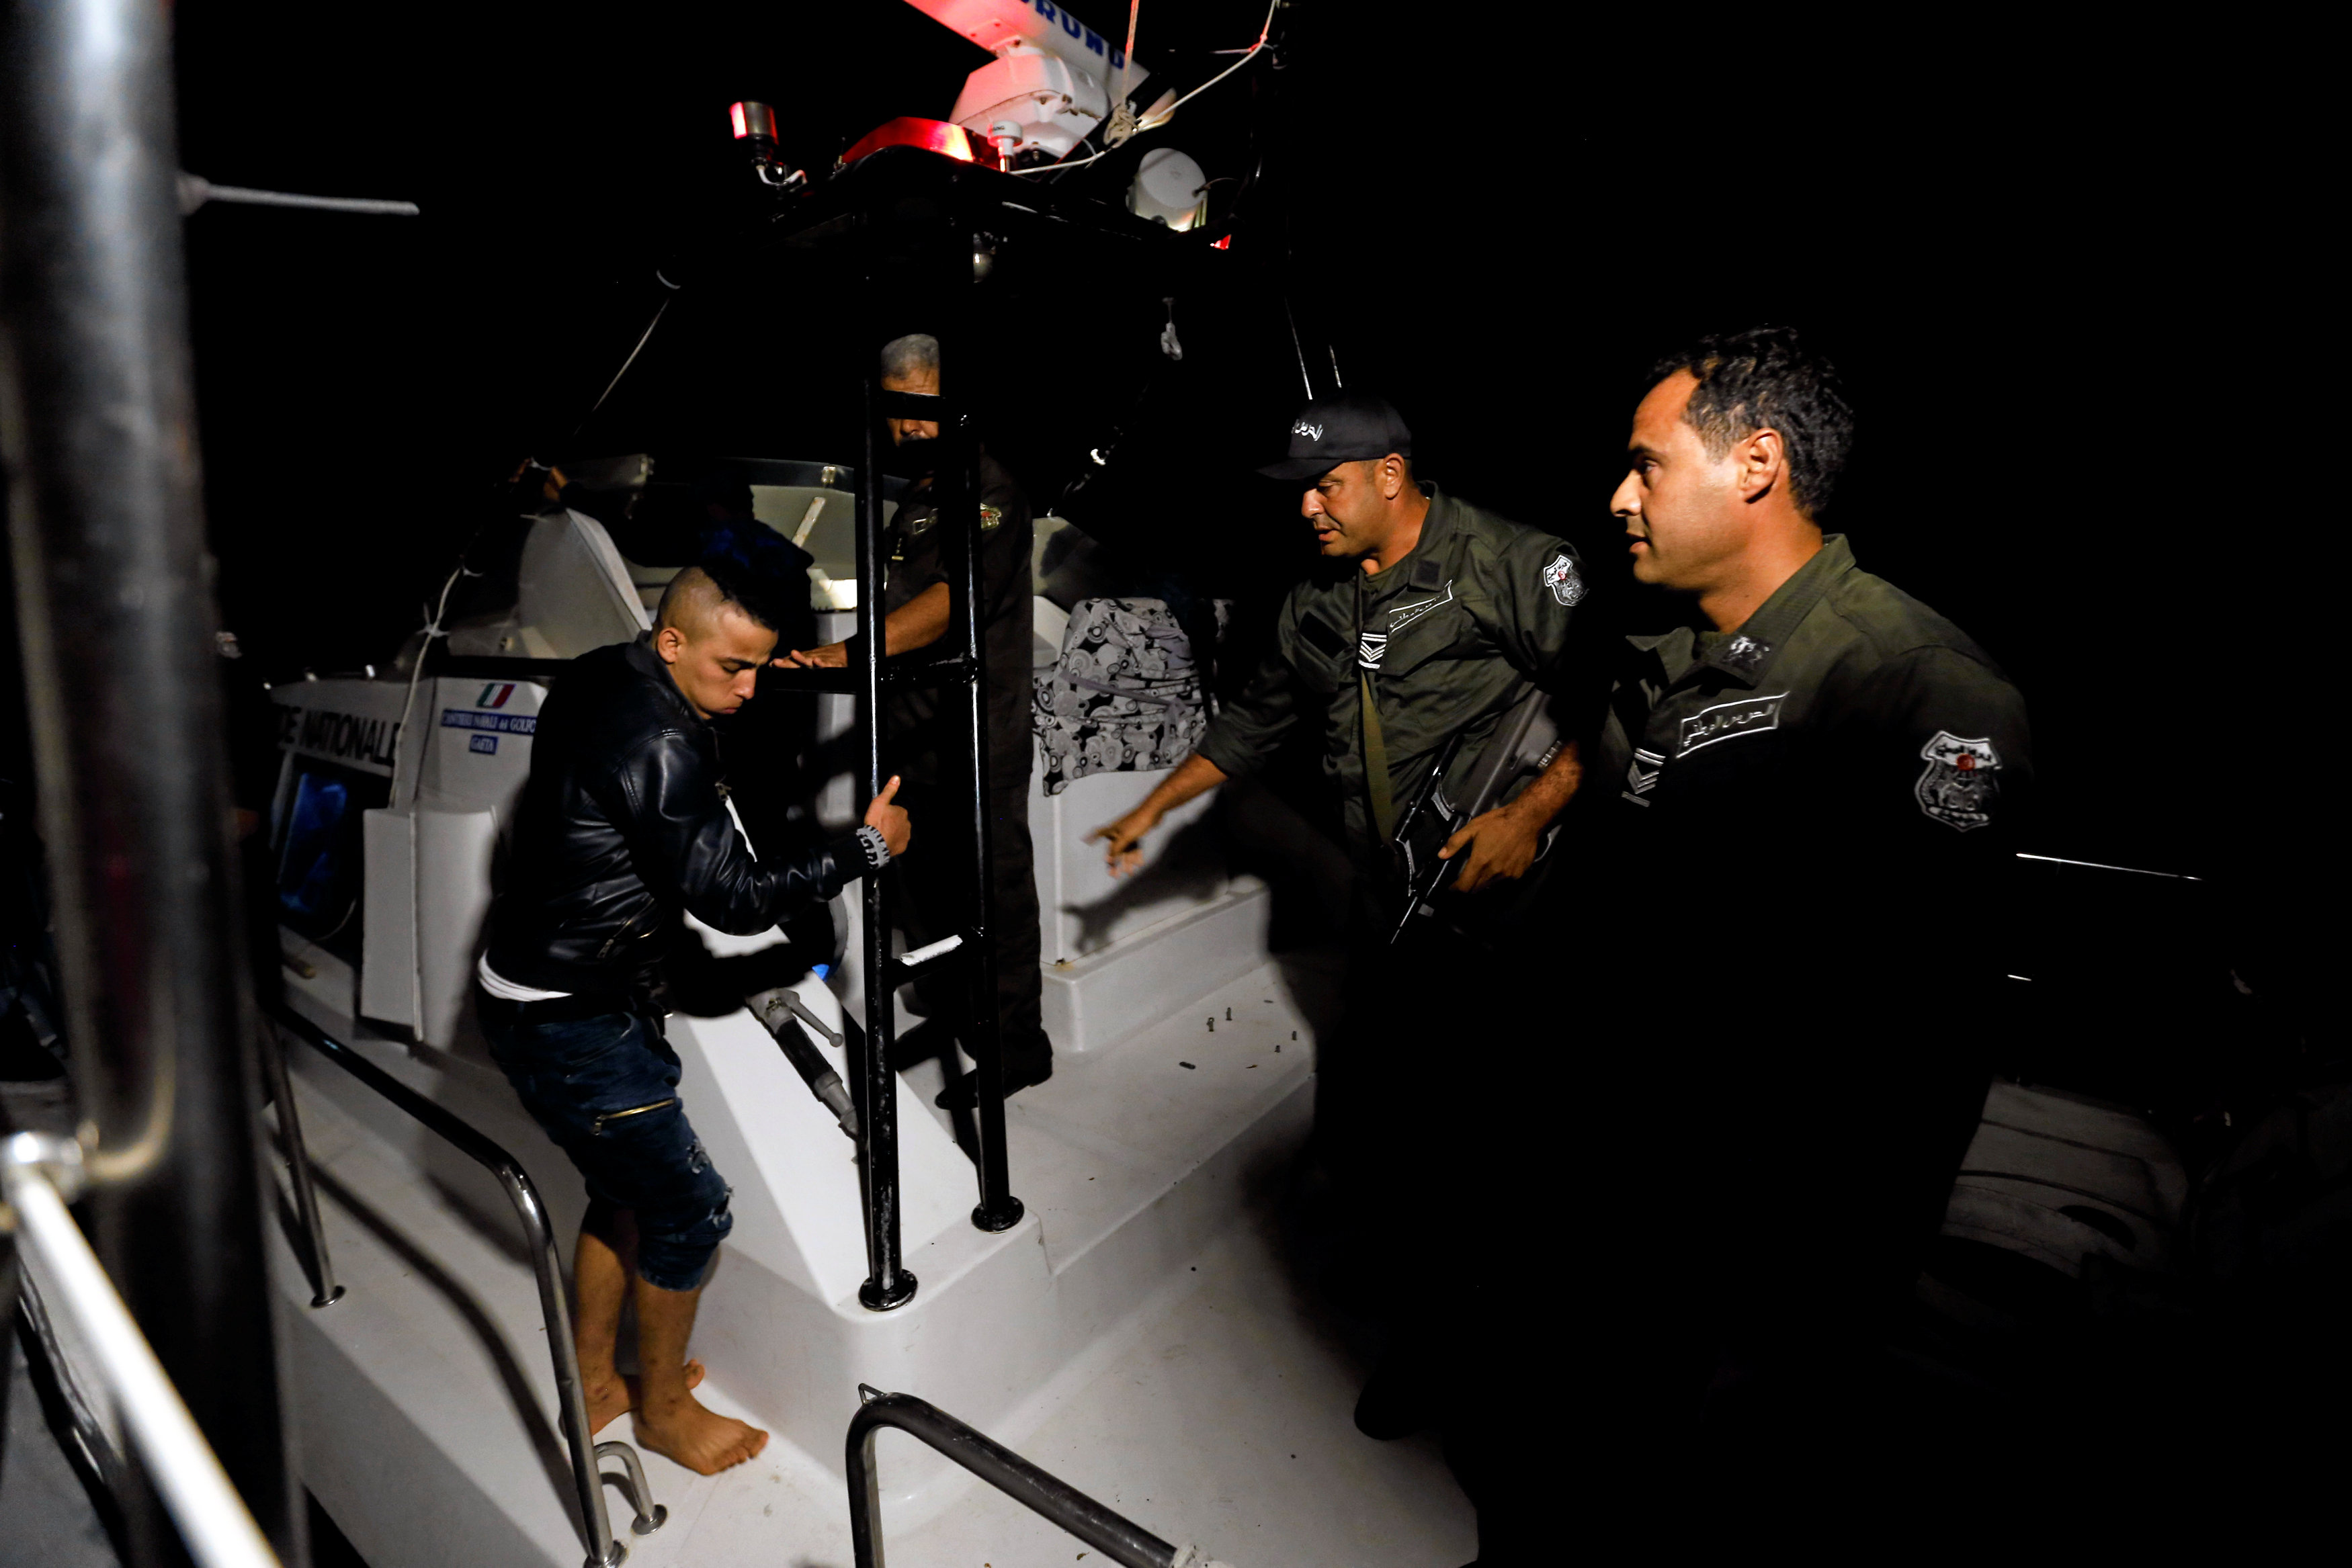 البحرية التونسية تضبط مهاجرين غير شرعيين